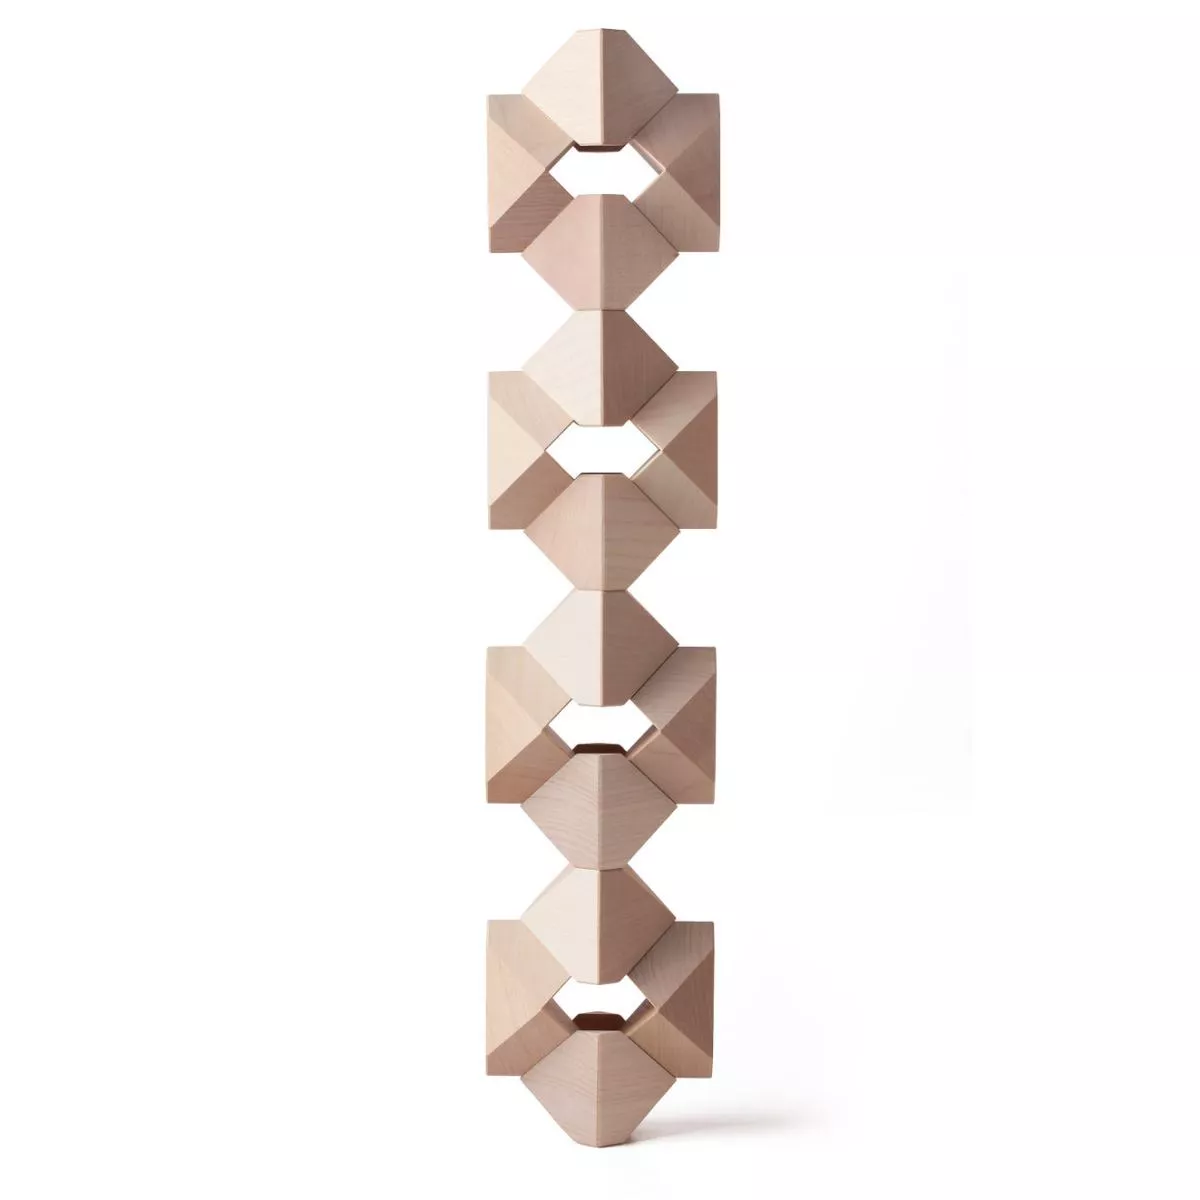 Tawa (Natur) – Originales Naef-Spiel aus Holz für kreative Konstruktionen